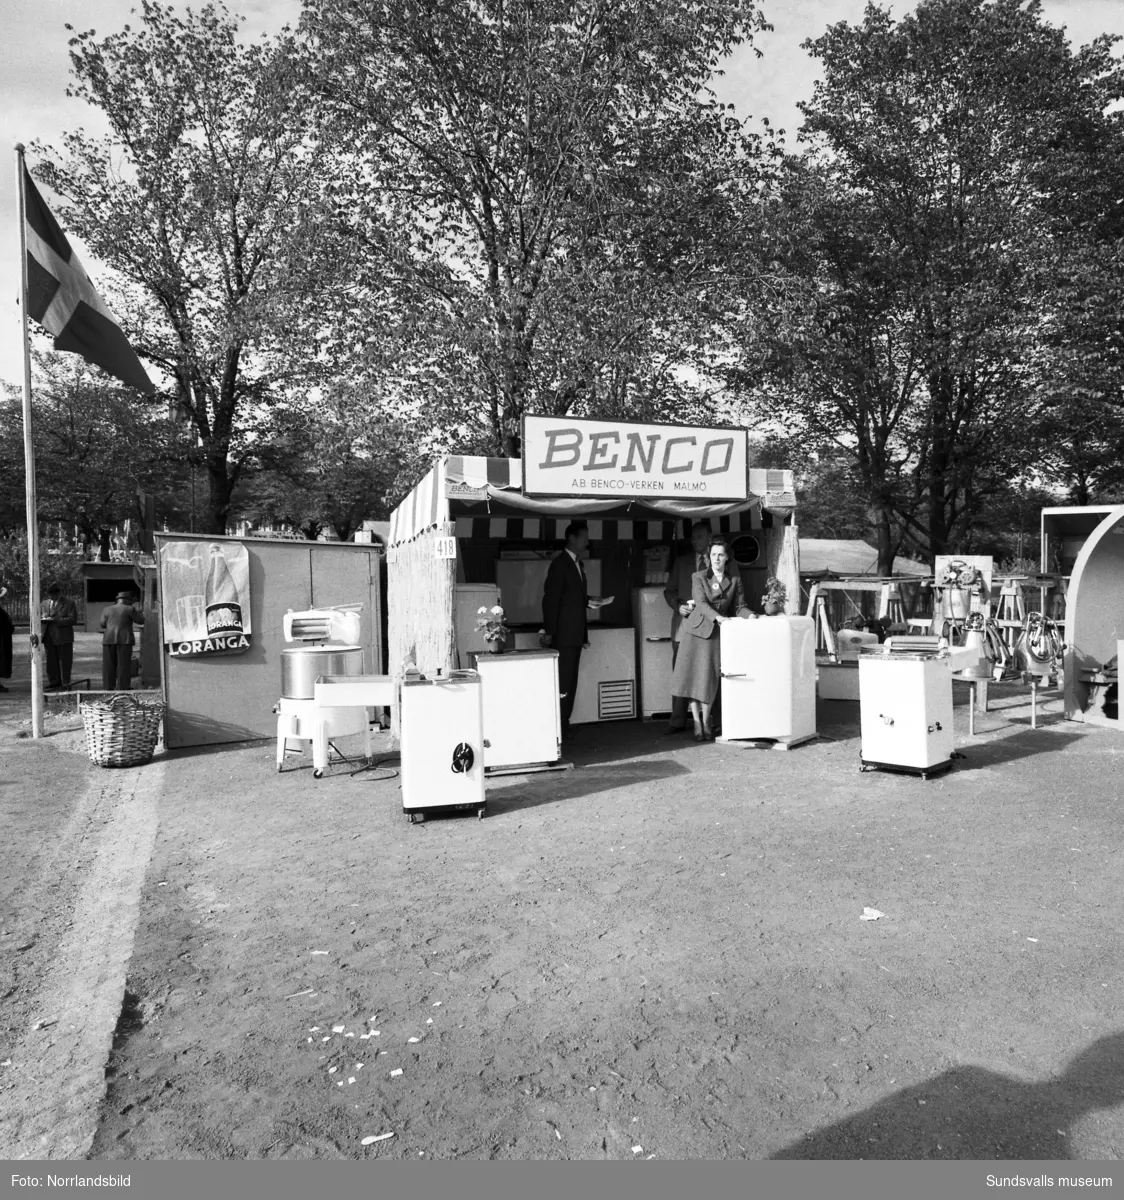 Benco-verken visar bland annat mjölkningsmaskiner i sin monter på Sundsvallsmässan 1954.